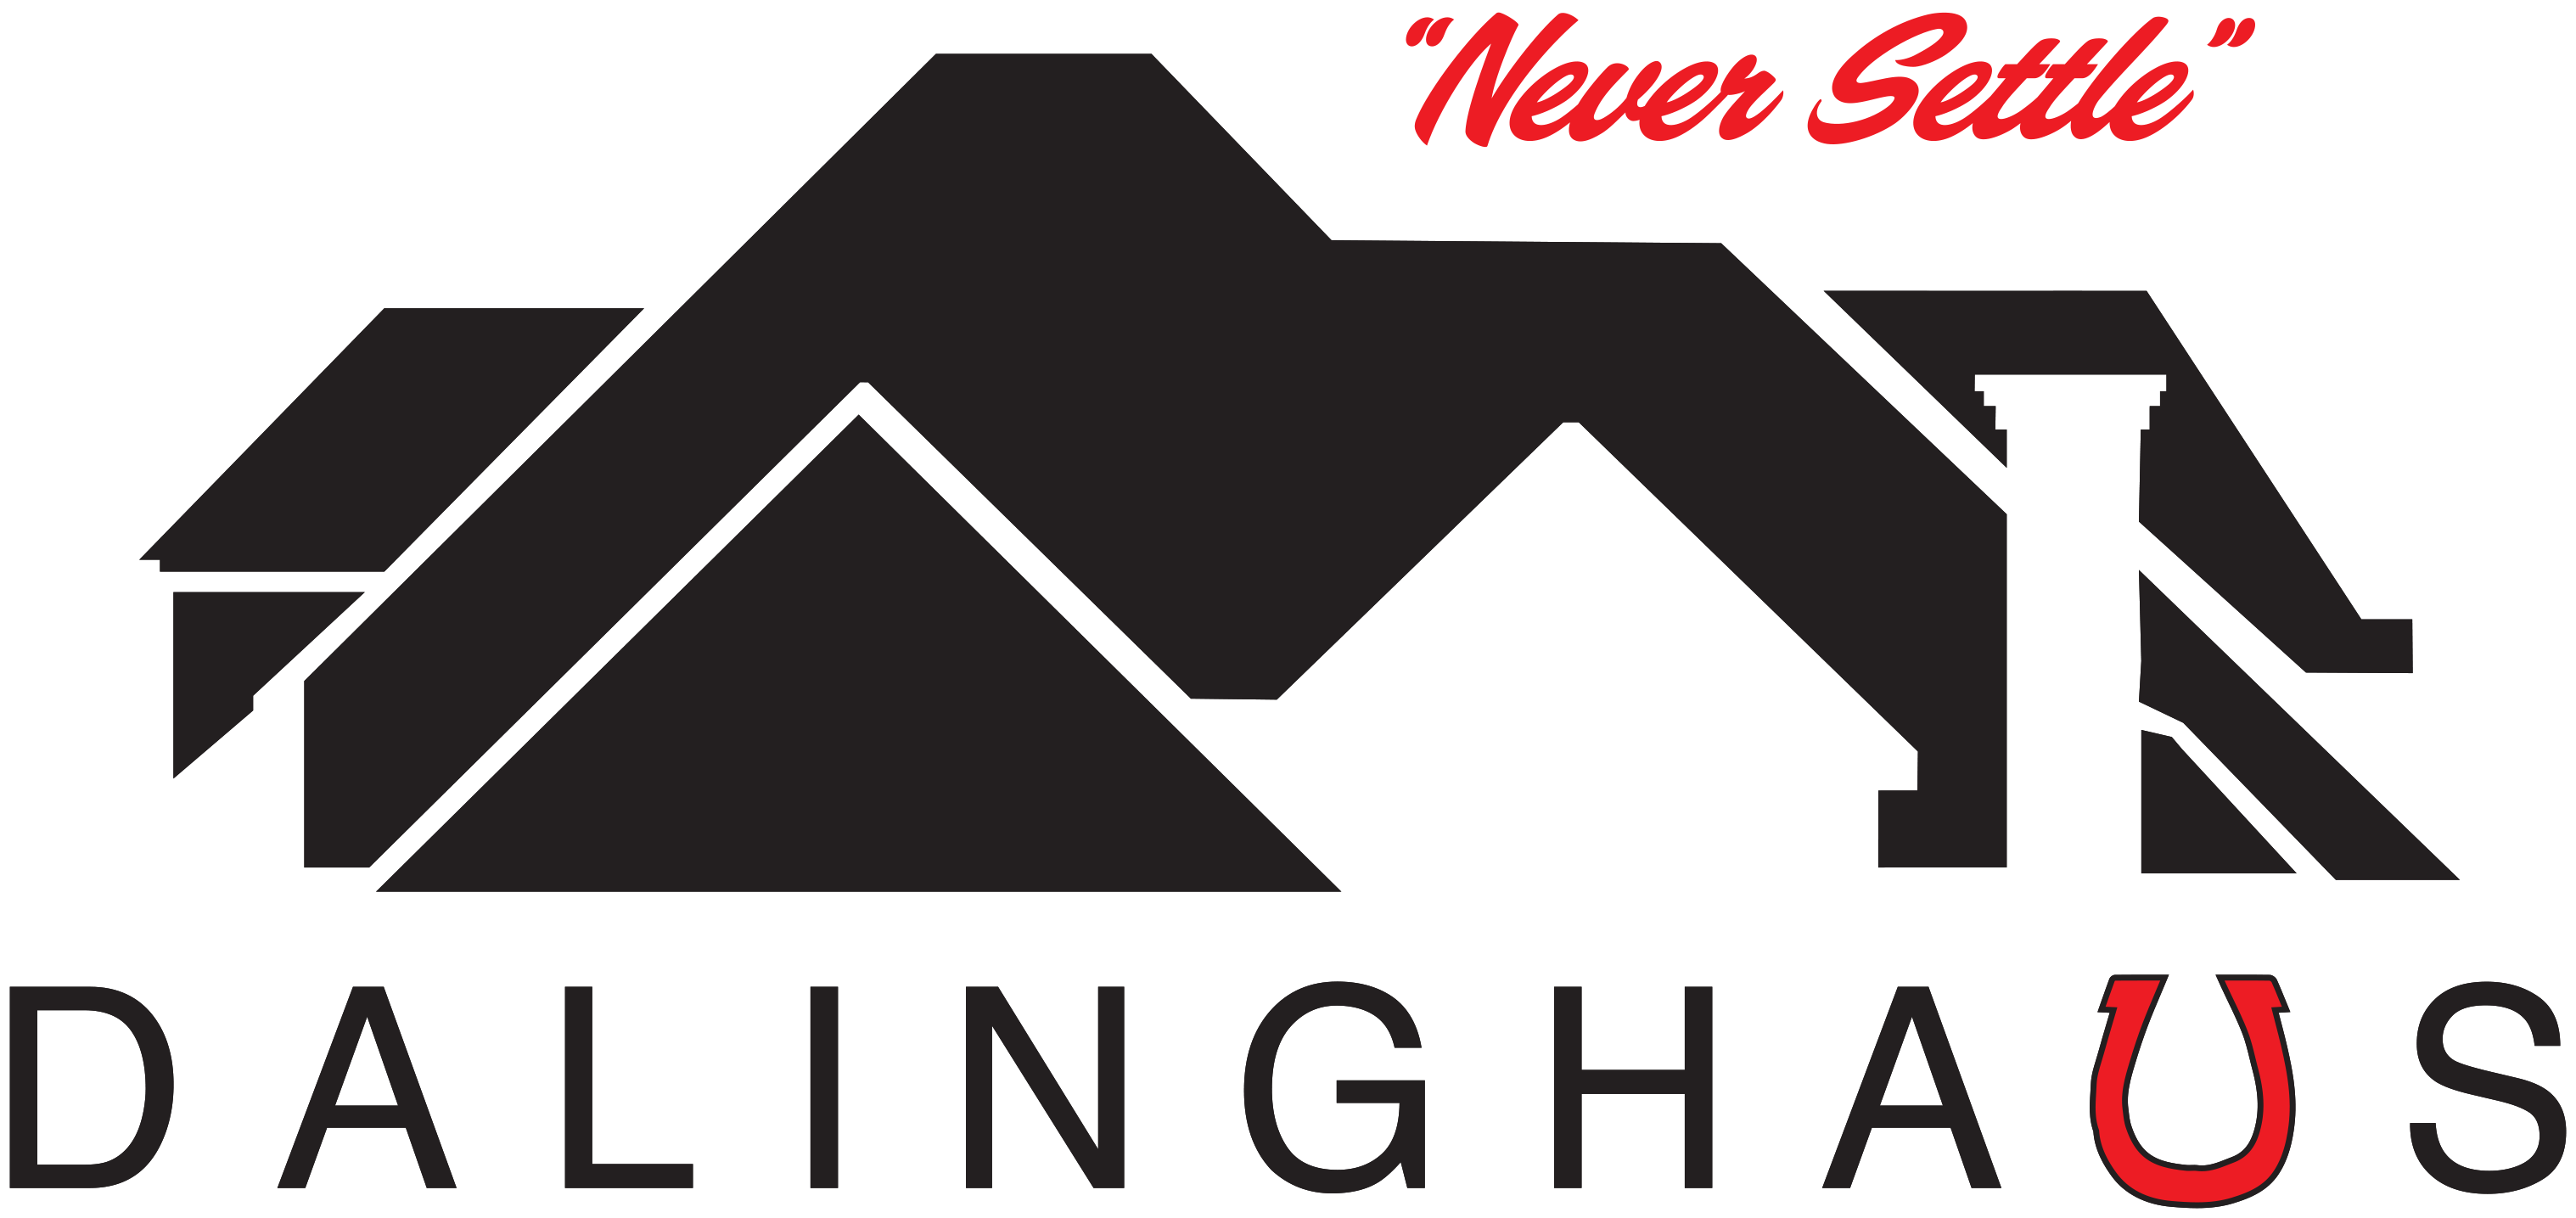 Dalinghaus_Logo-1.png